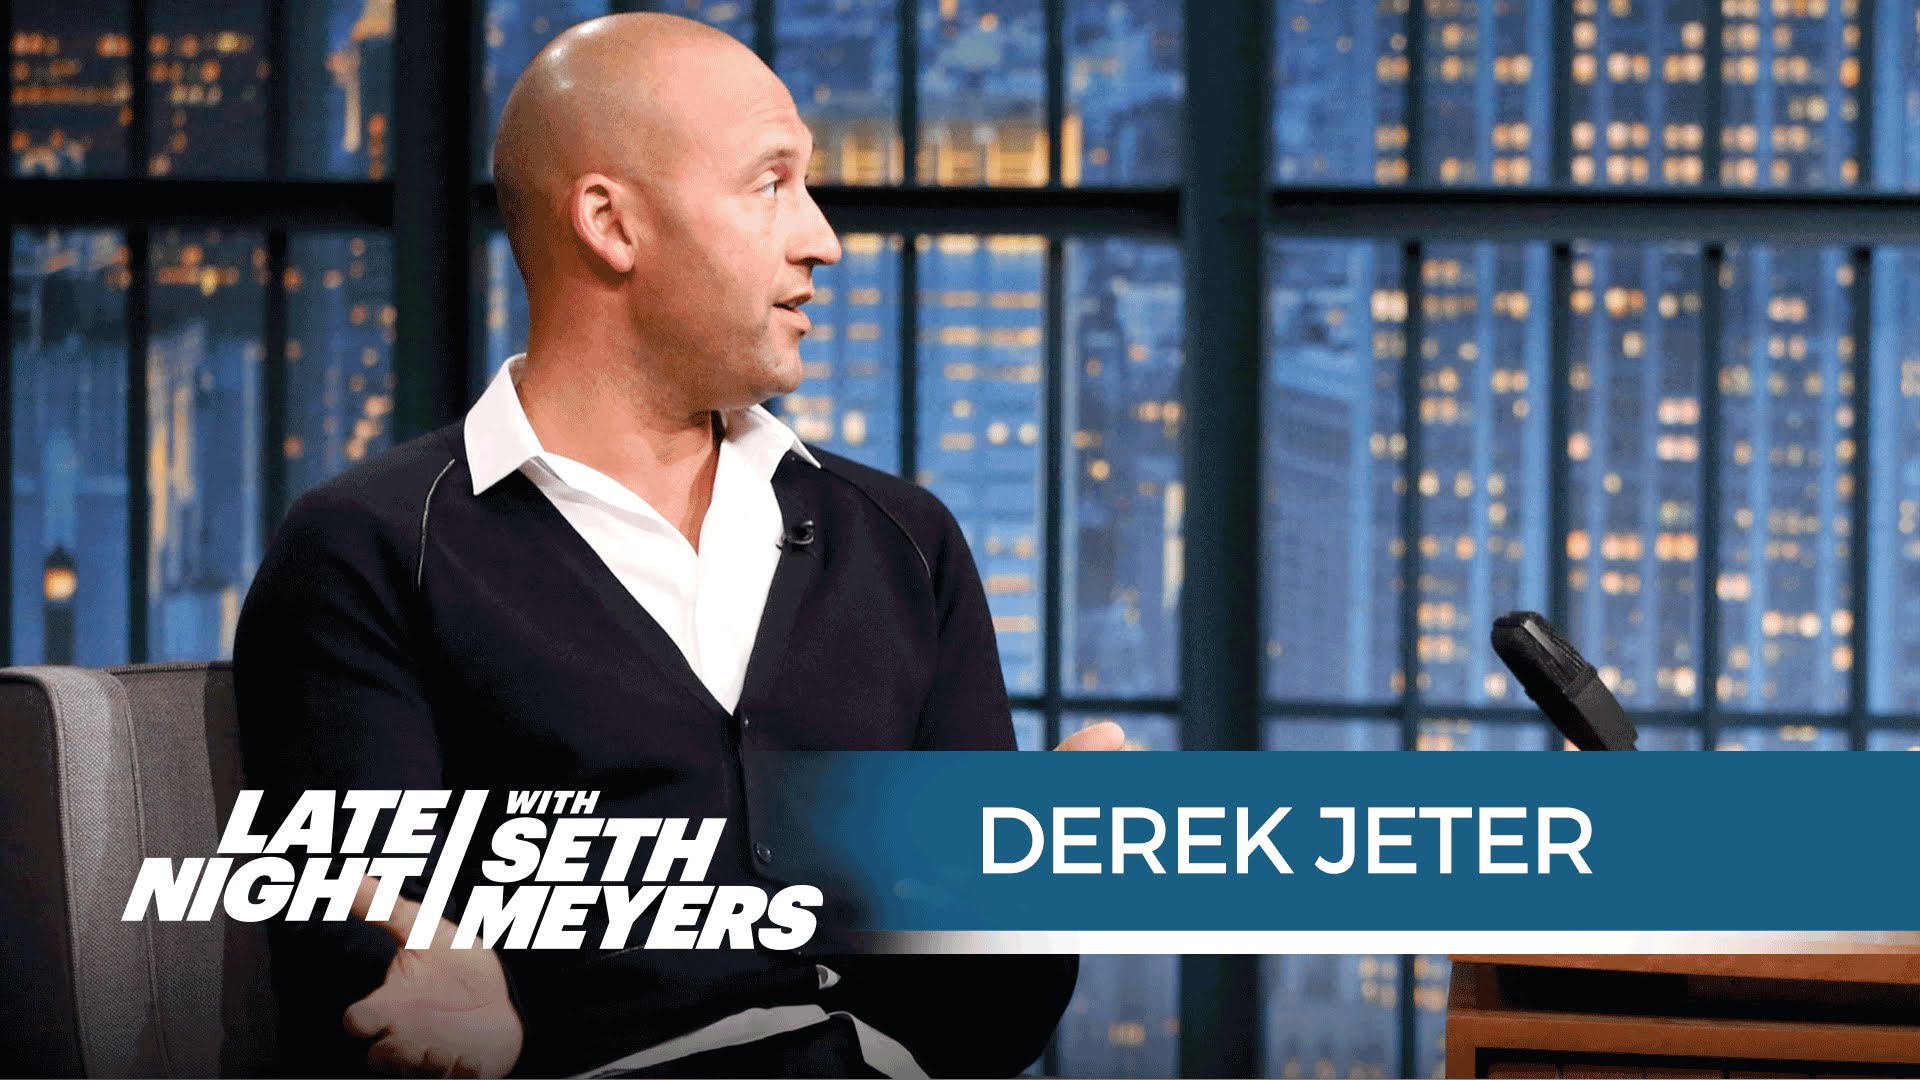 Derek Jeter says Boston Red Sox fans have gone soft